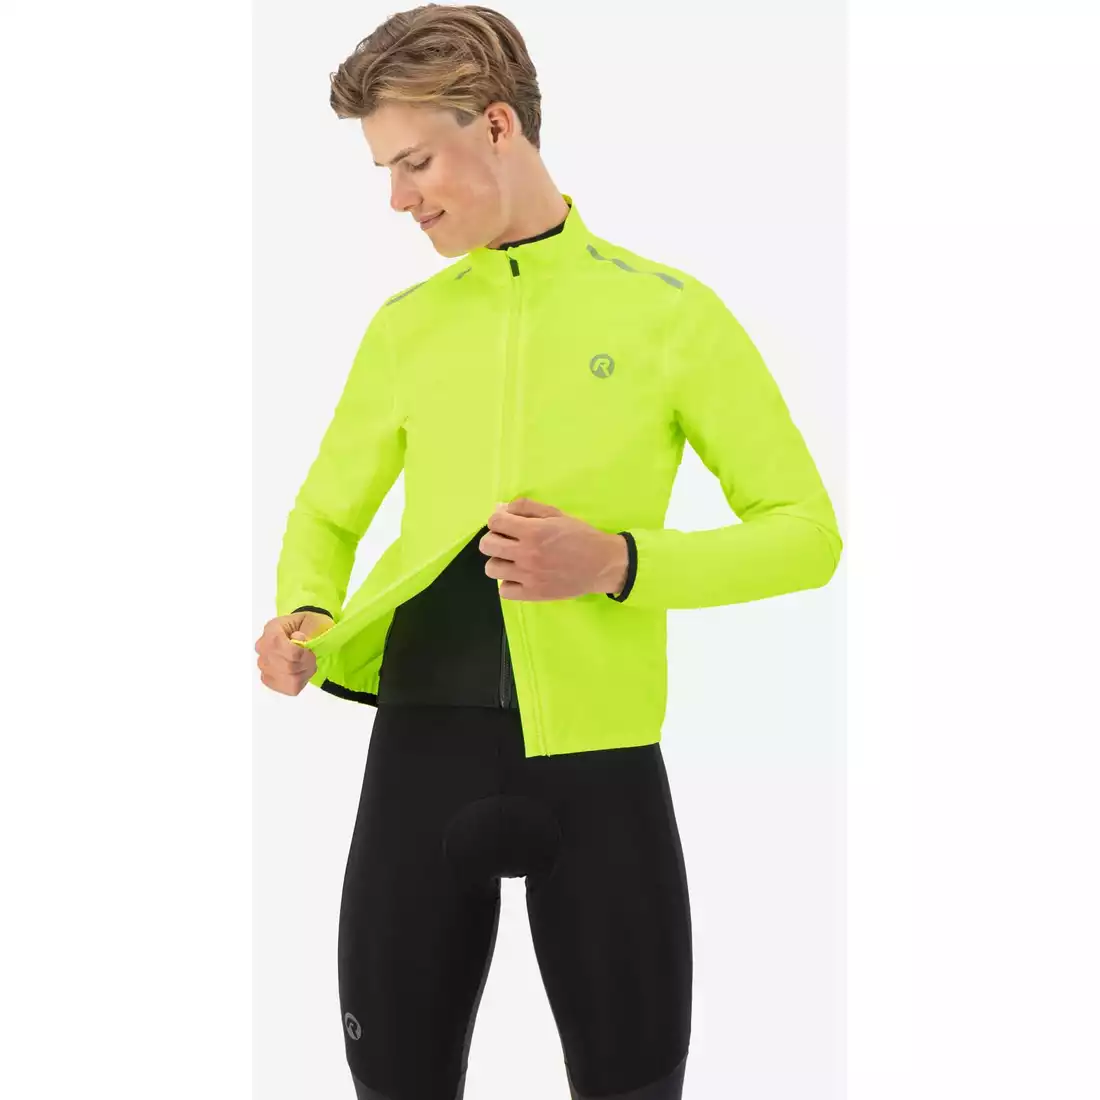 Rogelli DISTANCE jachetă de ploaie pentru ciclism pentru bărbați, fluor